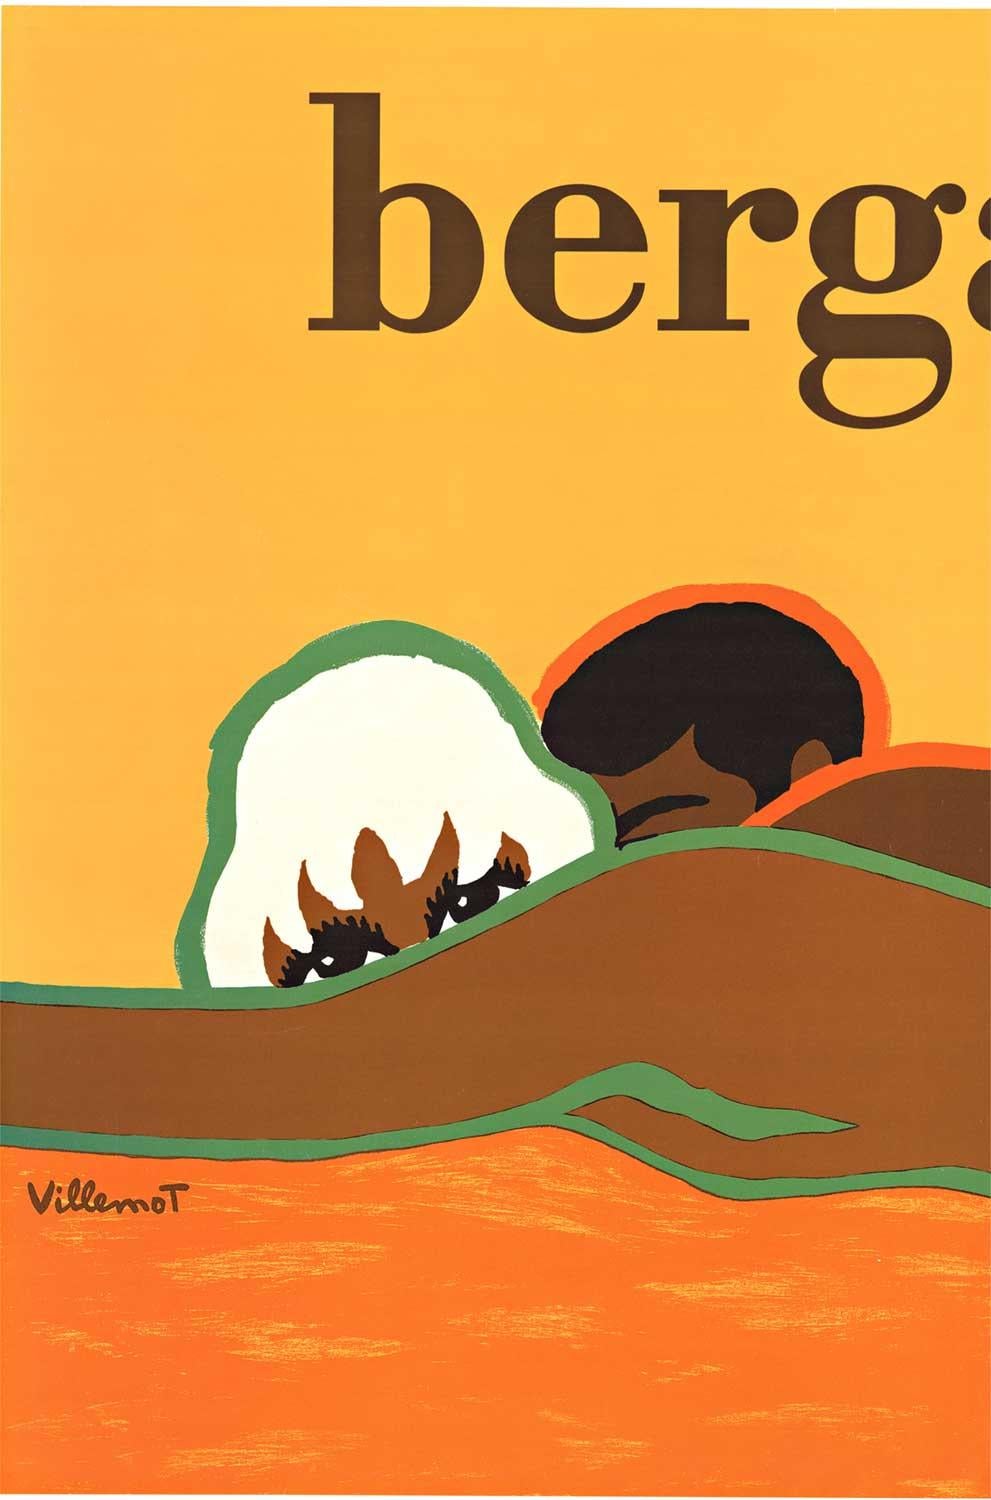 Original Bergasol vintage poster  Villemot  Sunscreen - Pop Art Print by Bernard Villemot